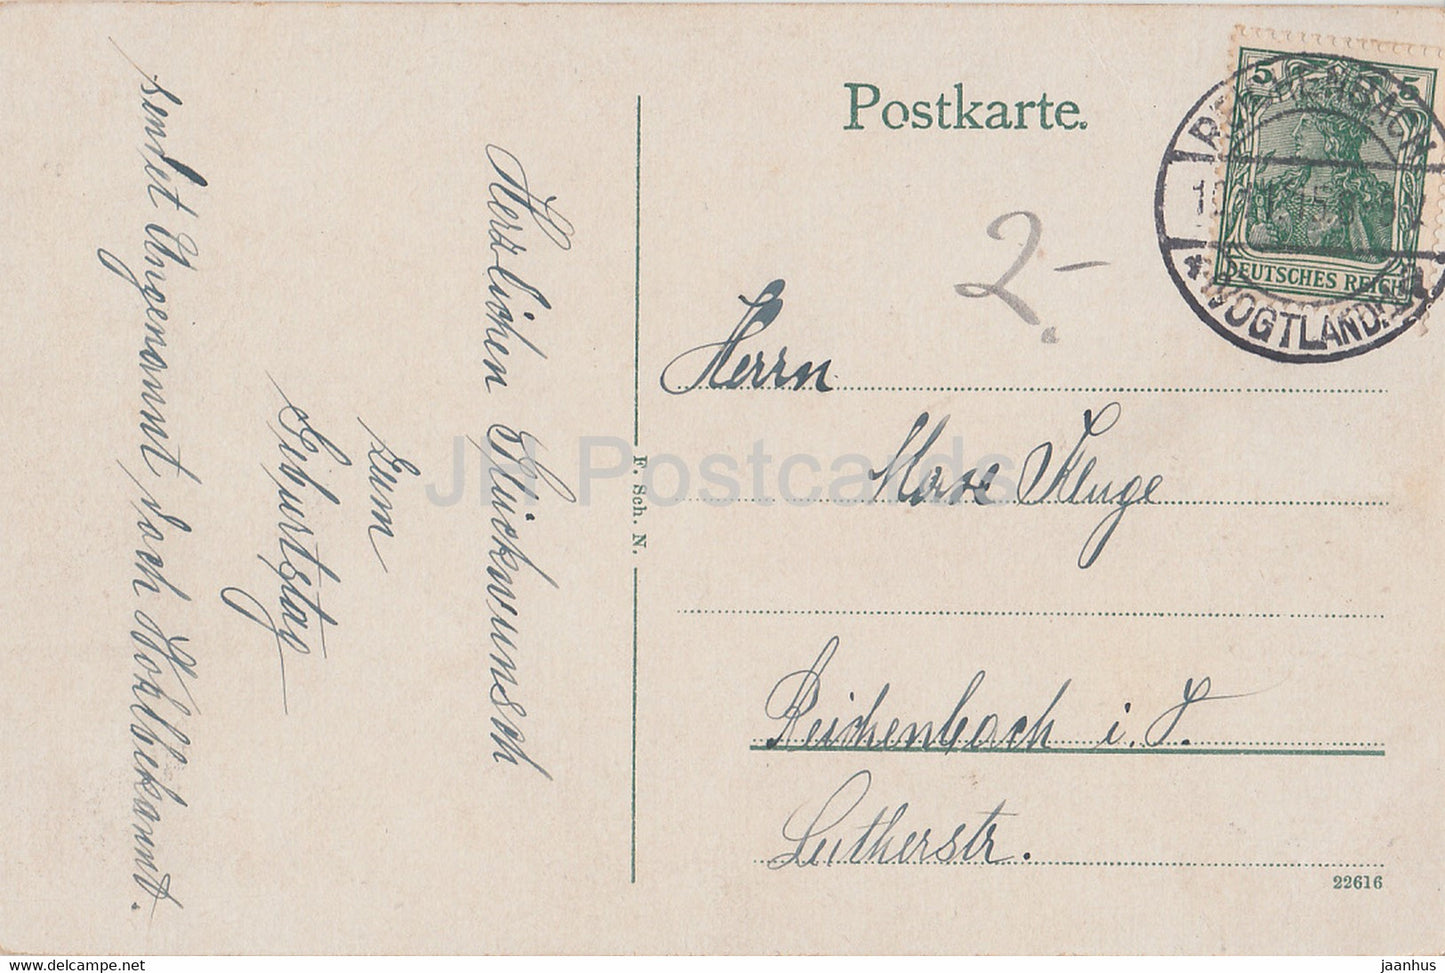 Nuremberg - Bratwurstglocklein - vieille voiture - Nuremberg - carte postale ancienne - 1915 - Allemagne - utilisé